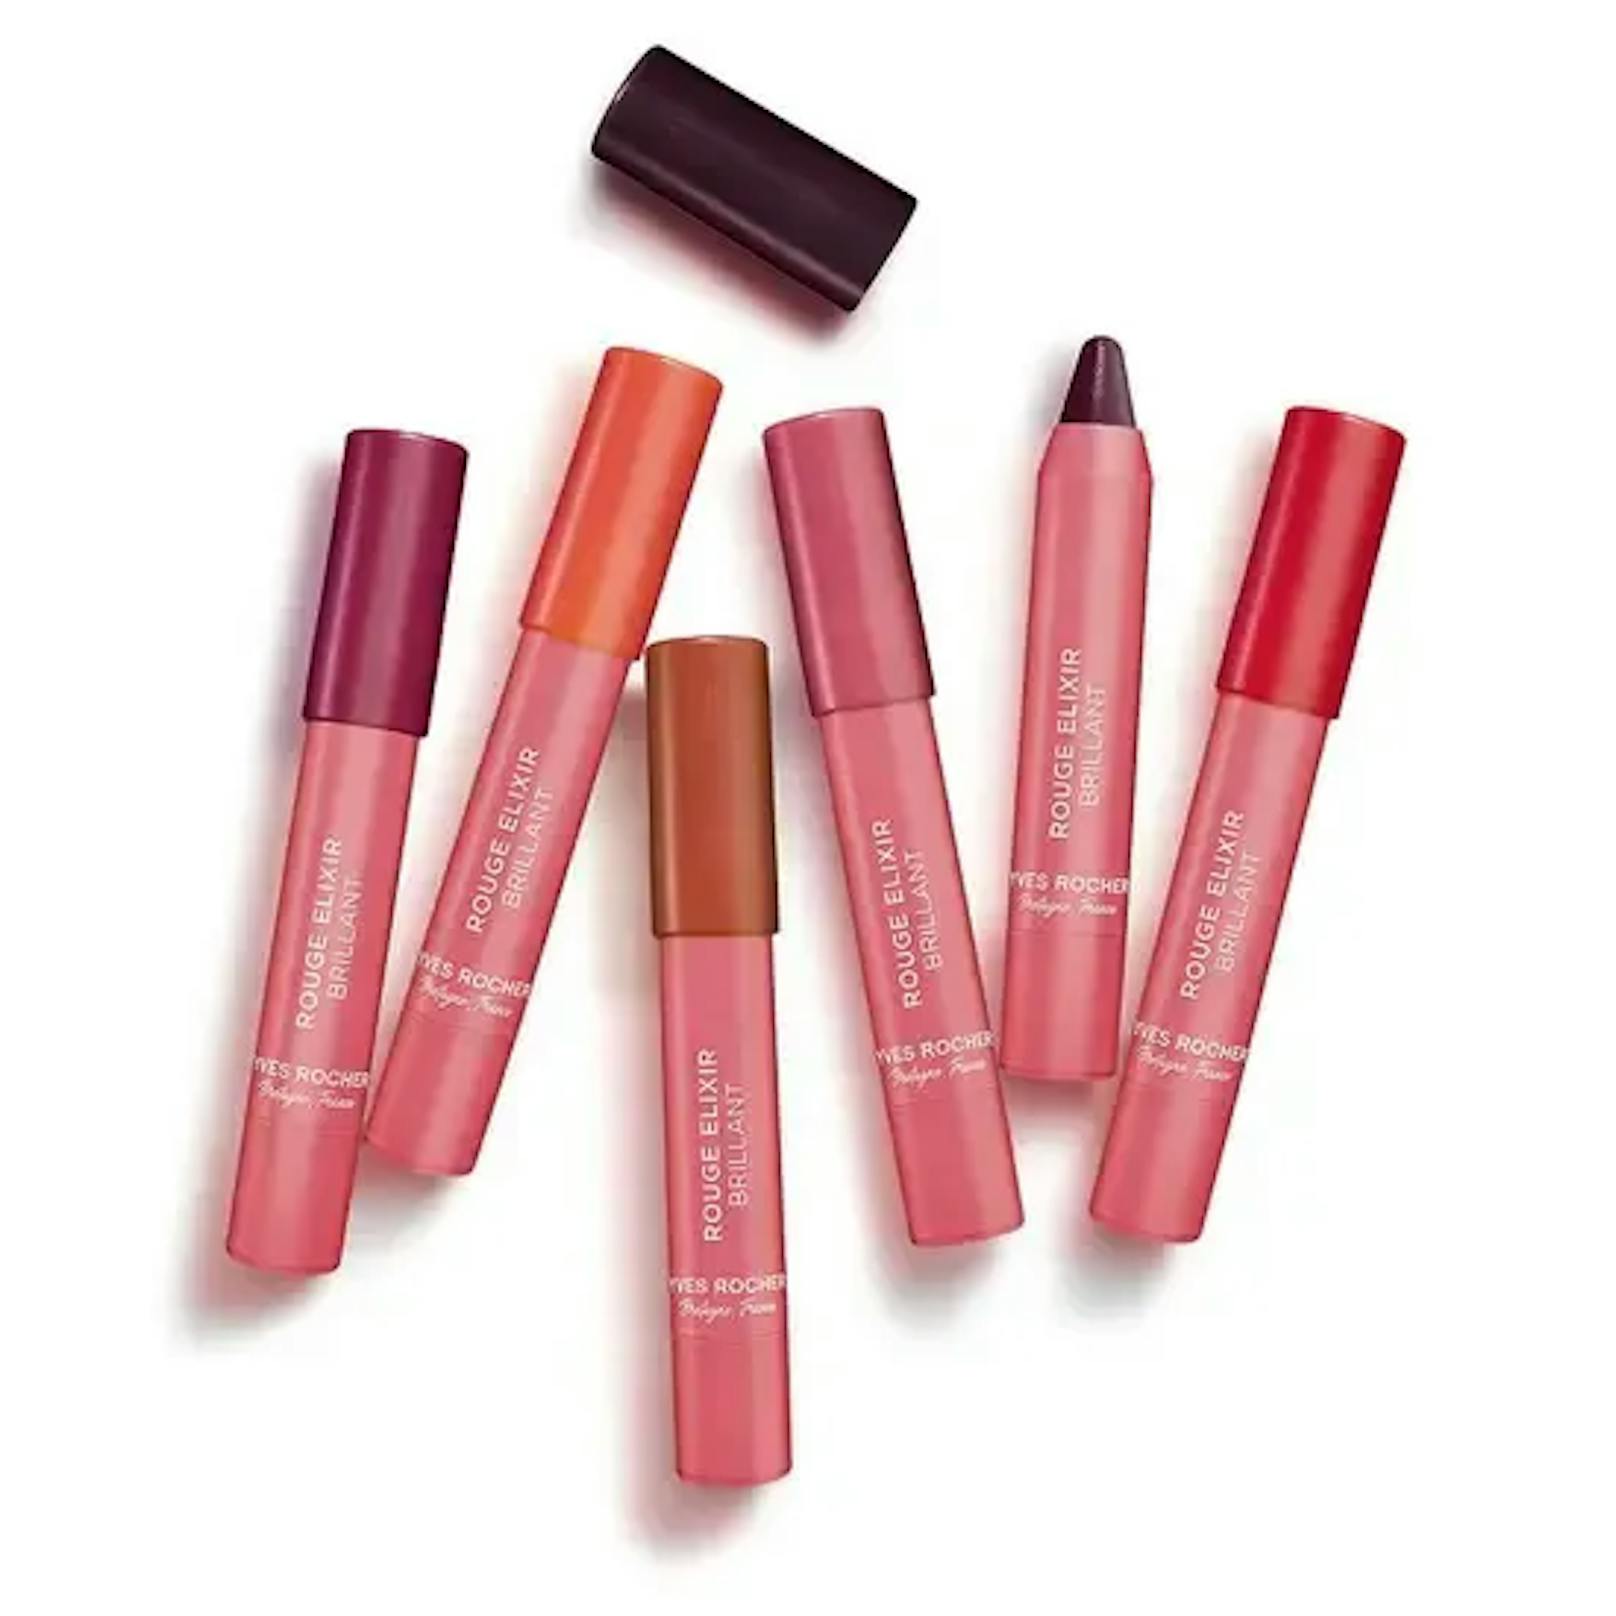 Der Rouge Elixir Farbglanz von Yves Rocher ist von der nachhaltigeren Sorte. Dieser sorgt ebenfalls dafür, dass deine Lippen schön glänzen und eine schöne Farbe tragen.